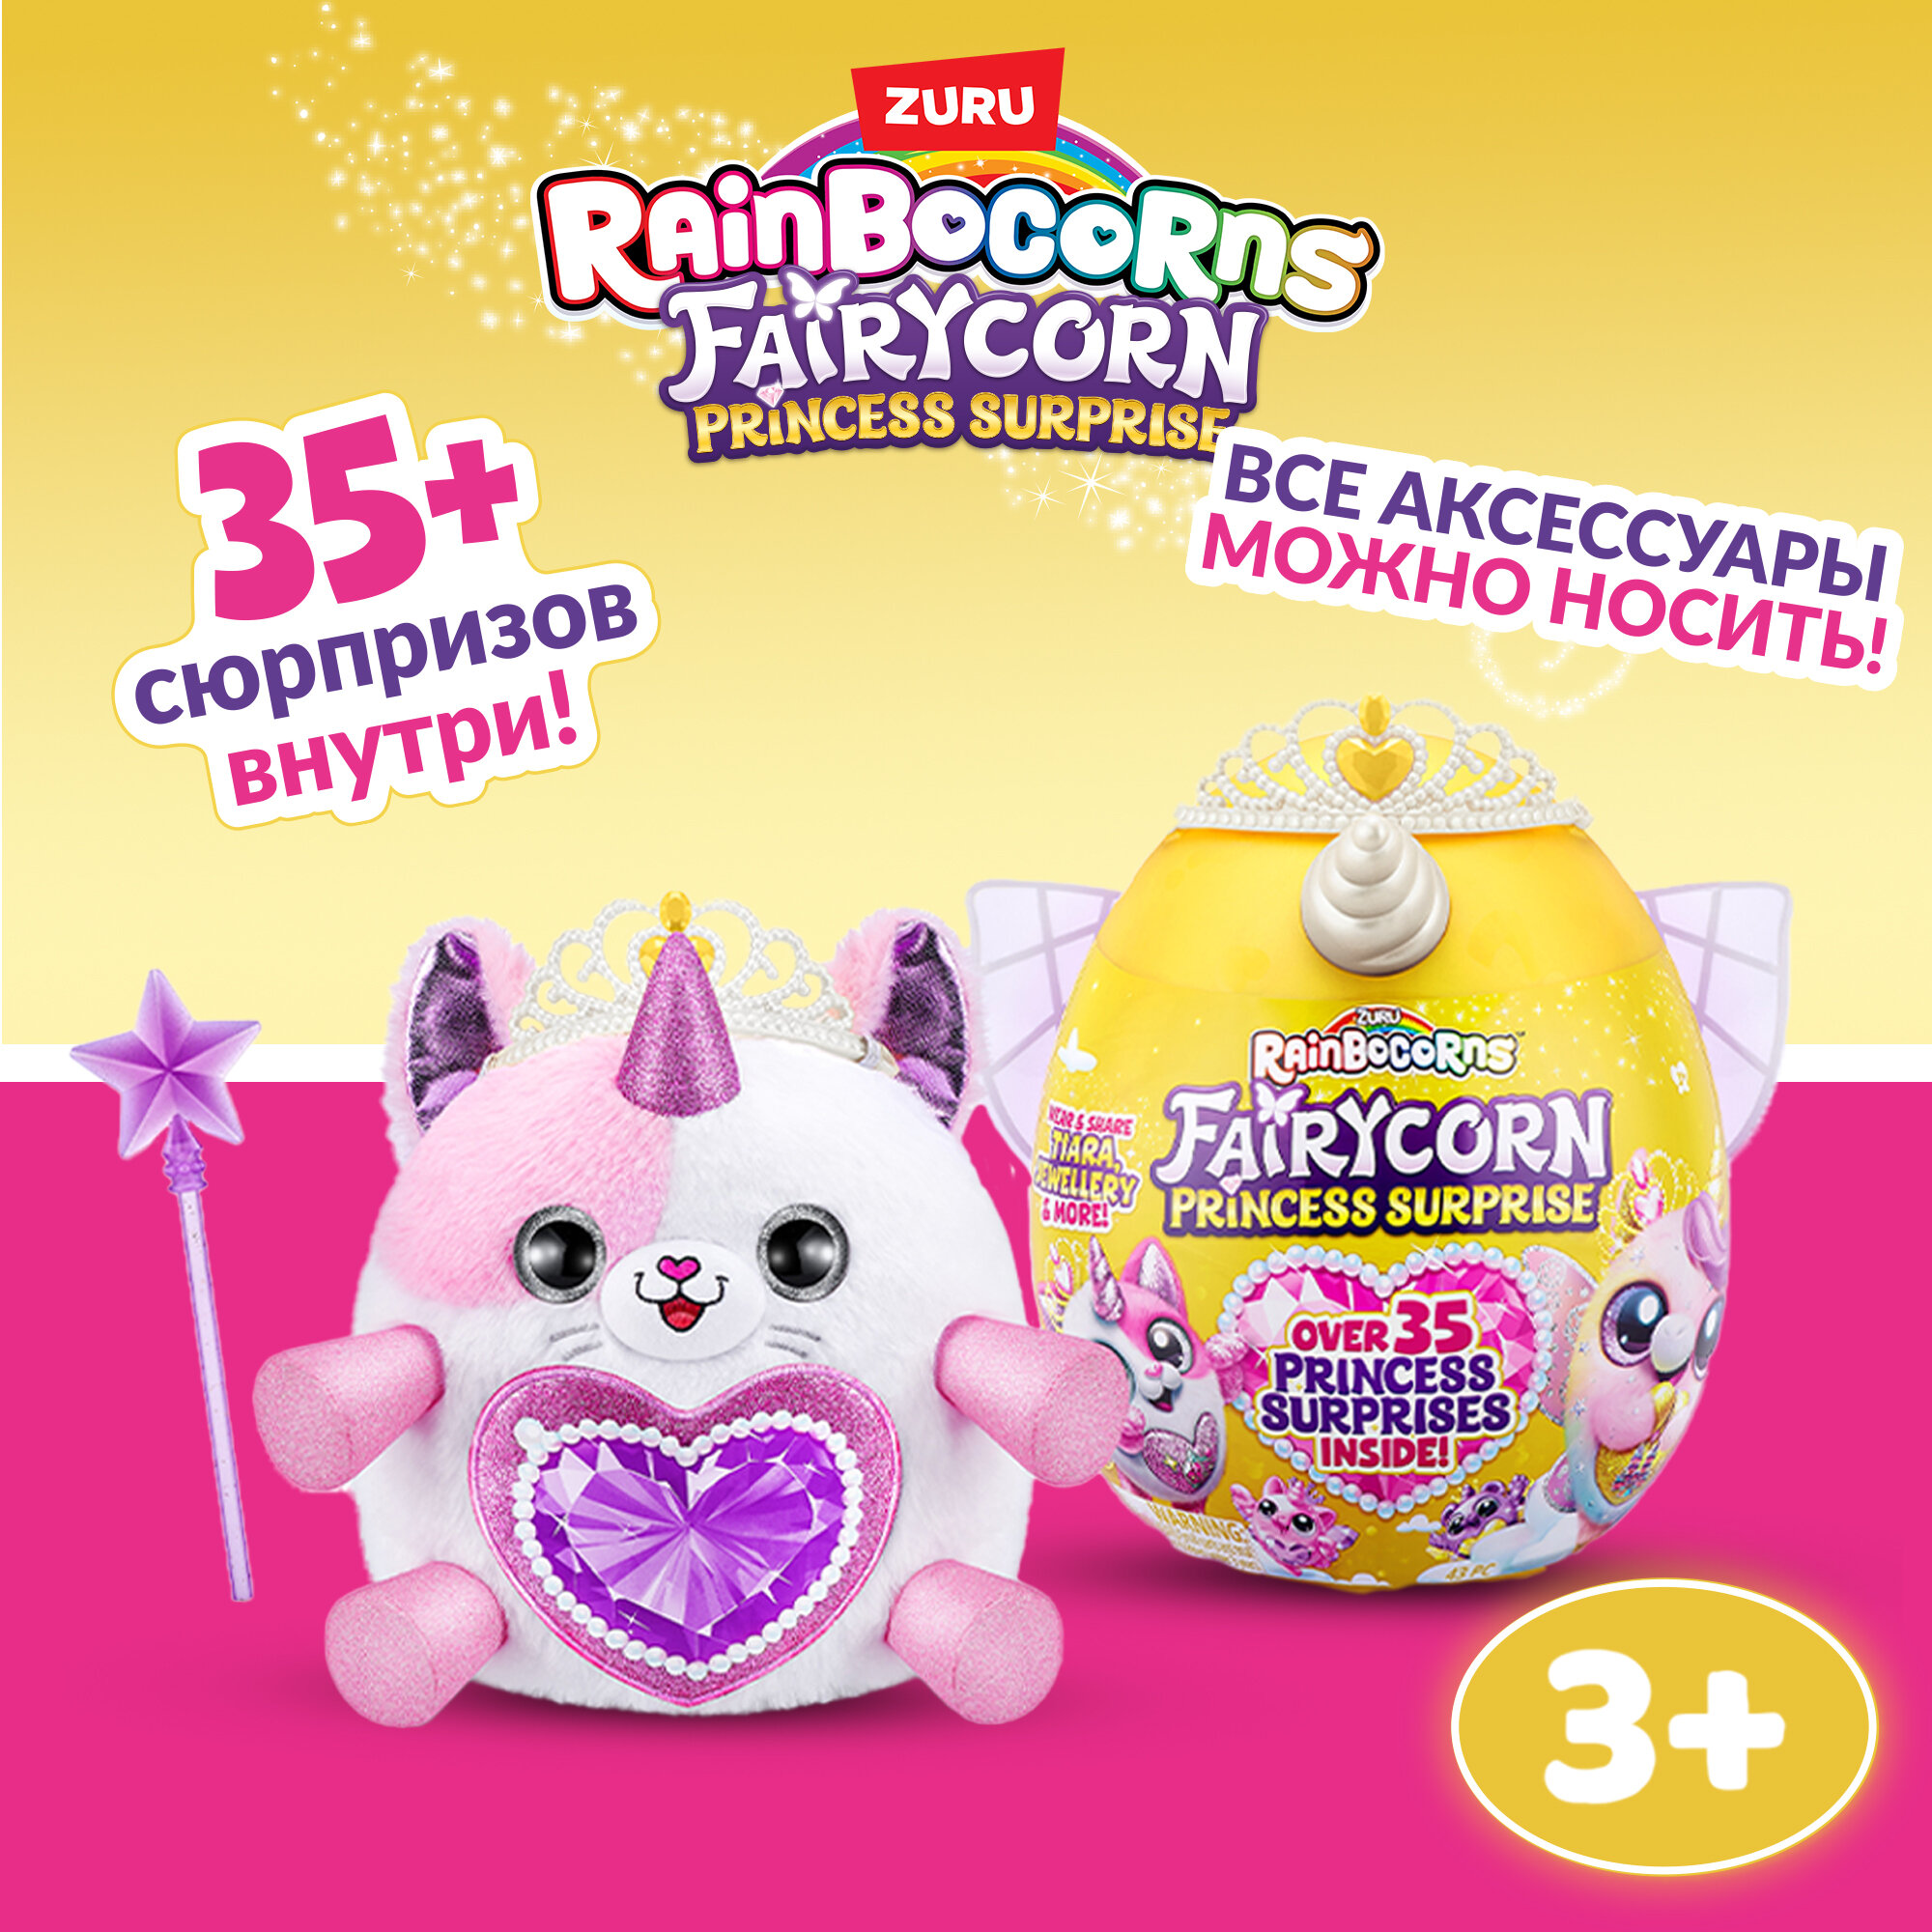 Игрушка-сюрприз ZURU RAINBOCORNS Fairycorn Princess, Плюшевая фея-принцесса, игрушки для девочек, 9281